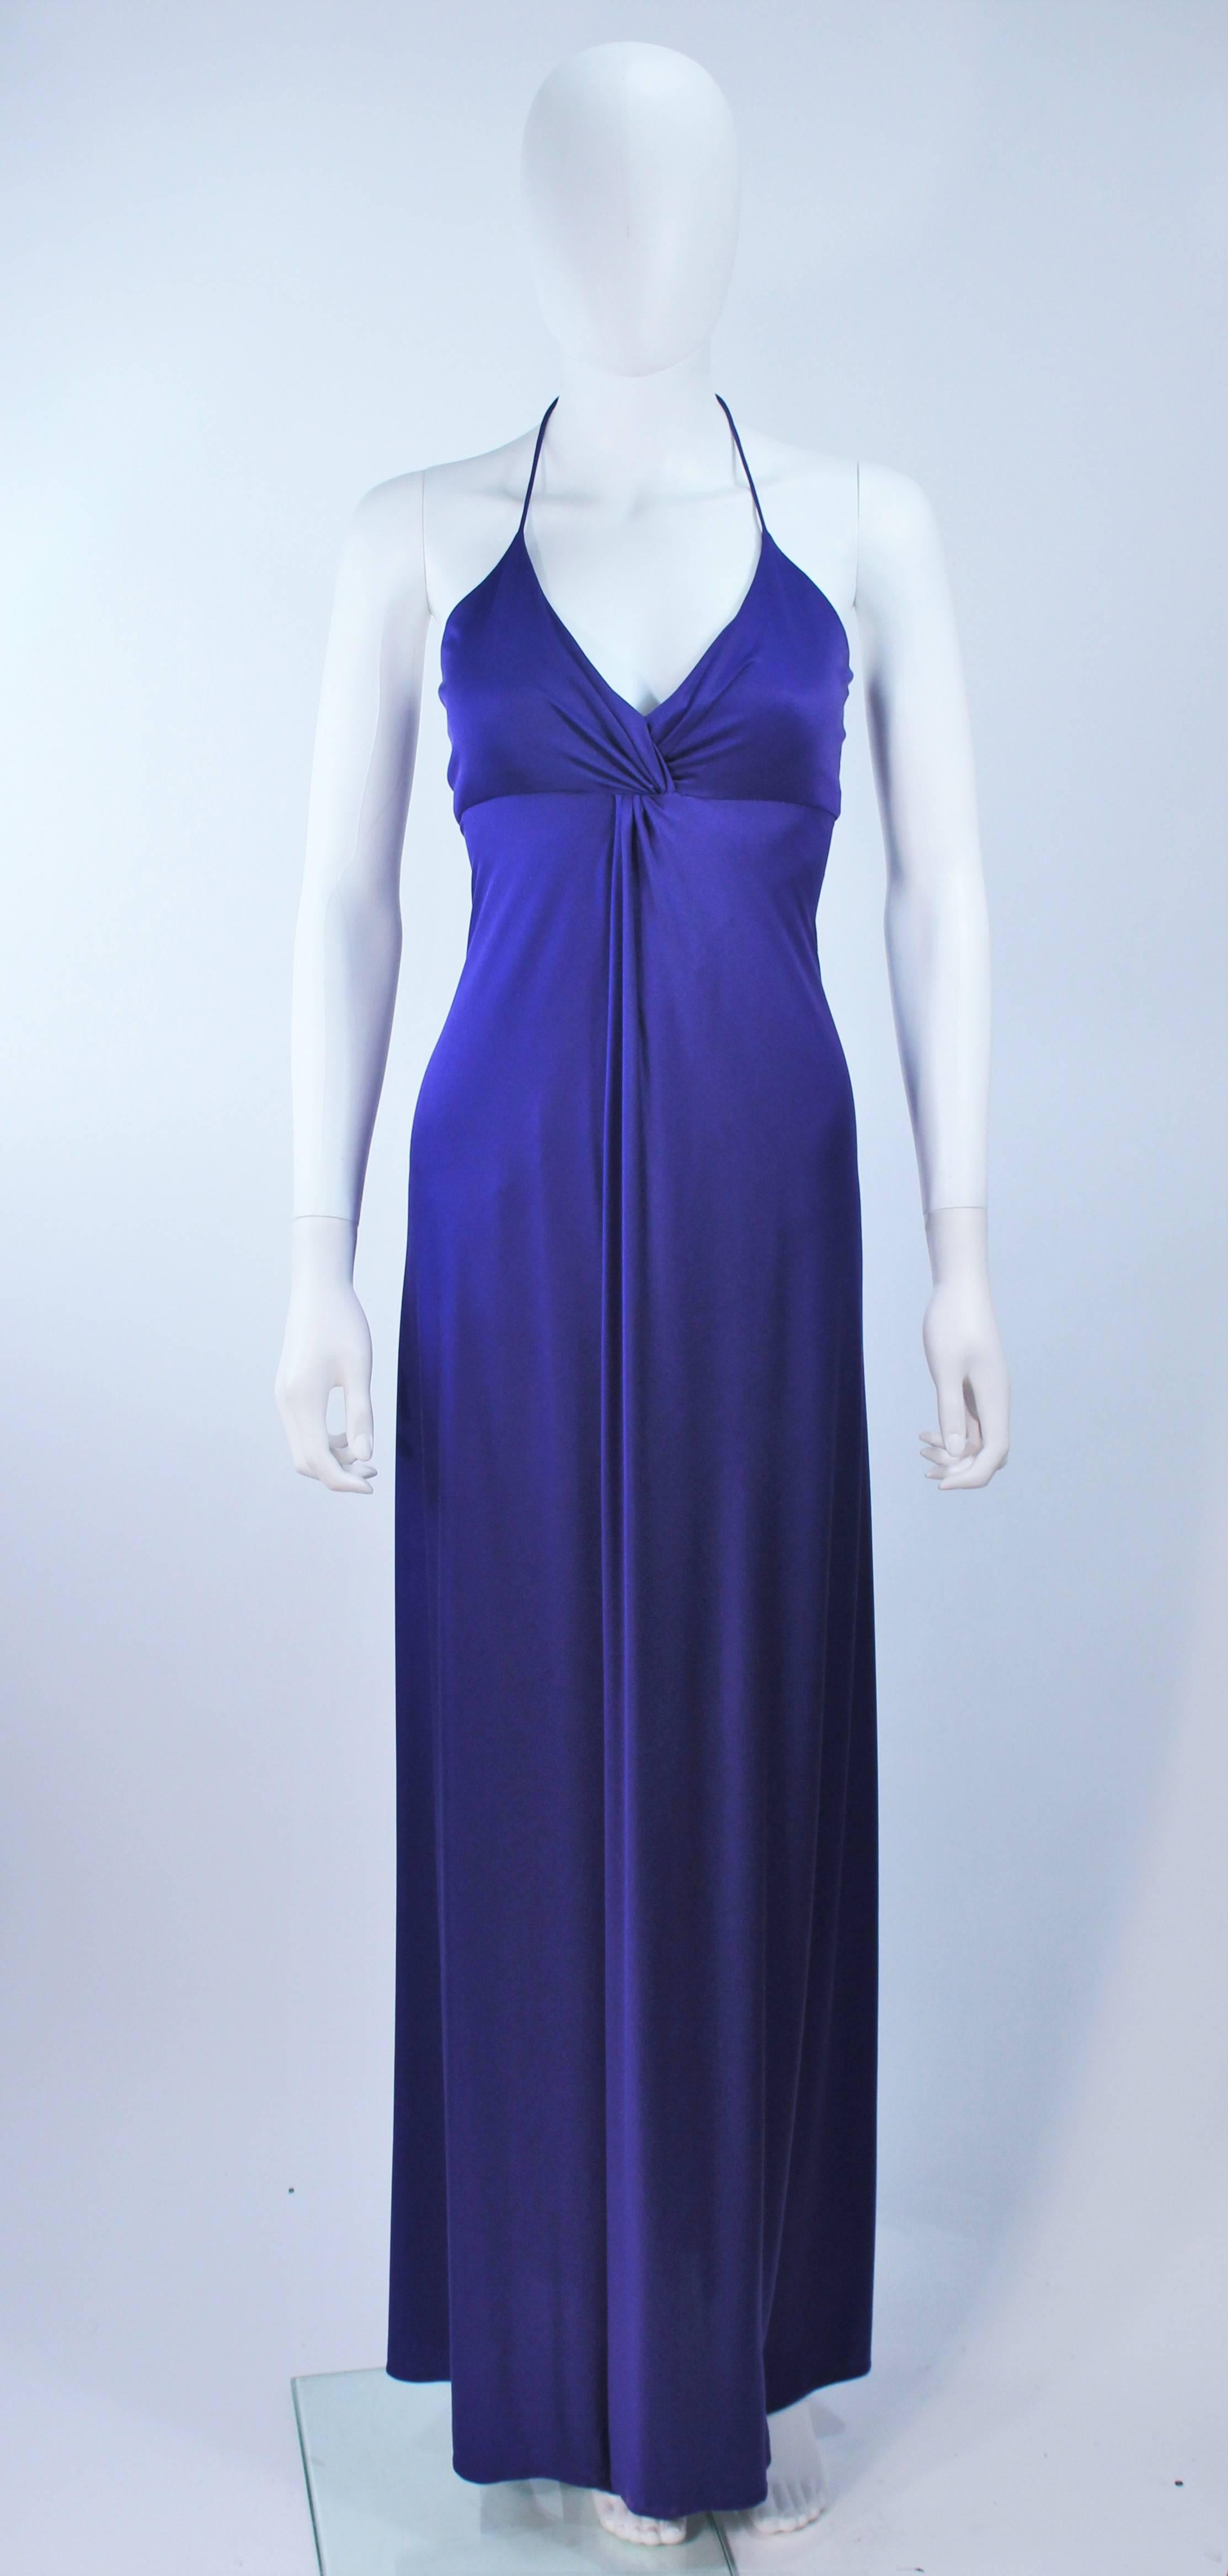 Cette Elizabeth Mason Couture  La robe est composée d'un jersey de soie violet et présente un motif drapé. L'encolure est de type dos nu. Cette robe chic et sans effort peut être stylisée dans une variété de modes. Fabriqué à Hille. 

 La robe peut